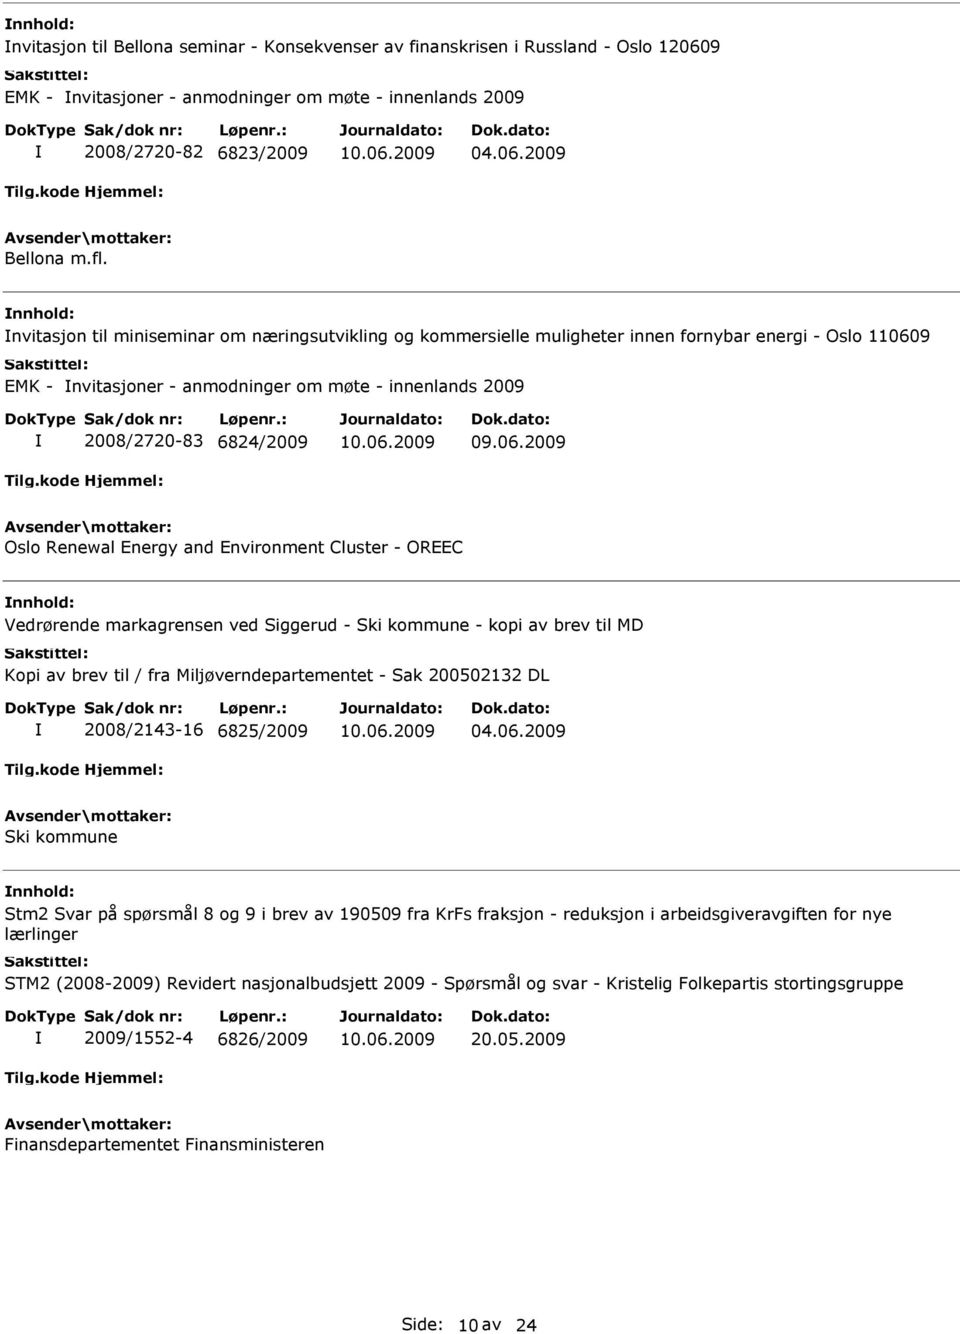 9 EMK - nvitasjoner - anmodninger om møte - innenlands 2009 2008/2720-83 6824/2009 09.06.